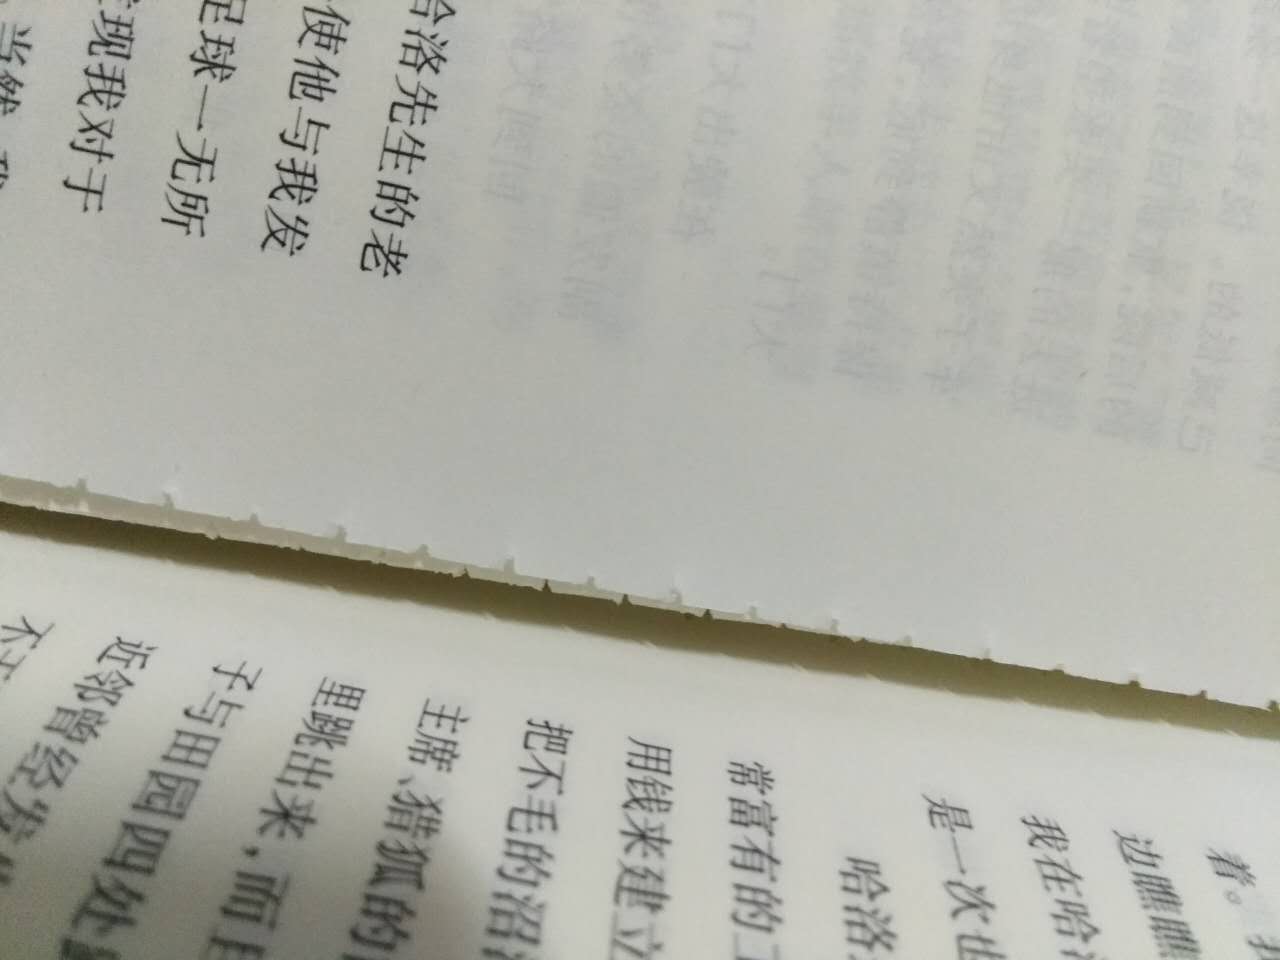 书的质量不好，才看了几天就脱页了。